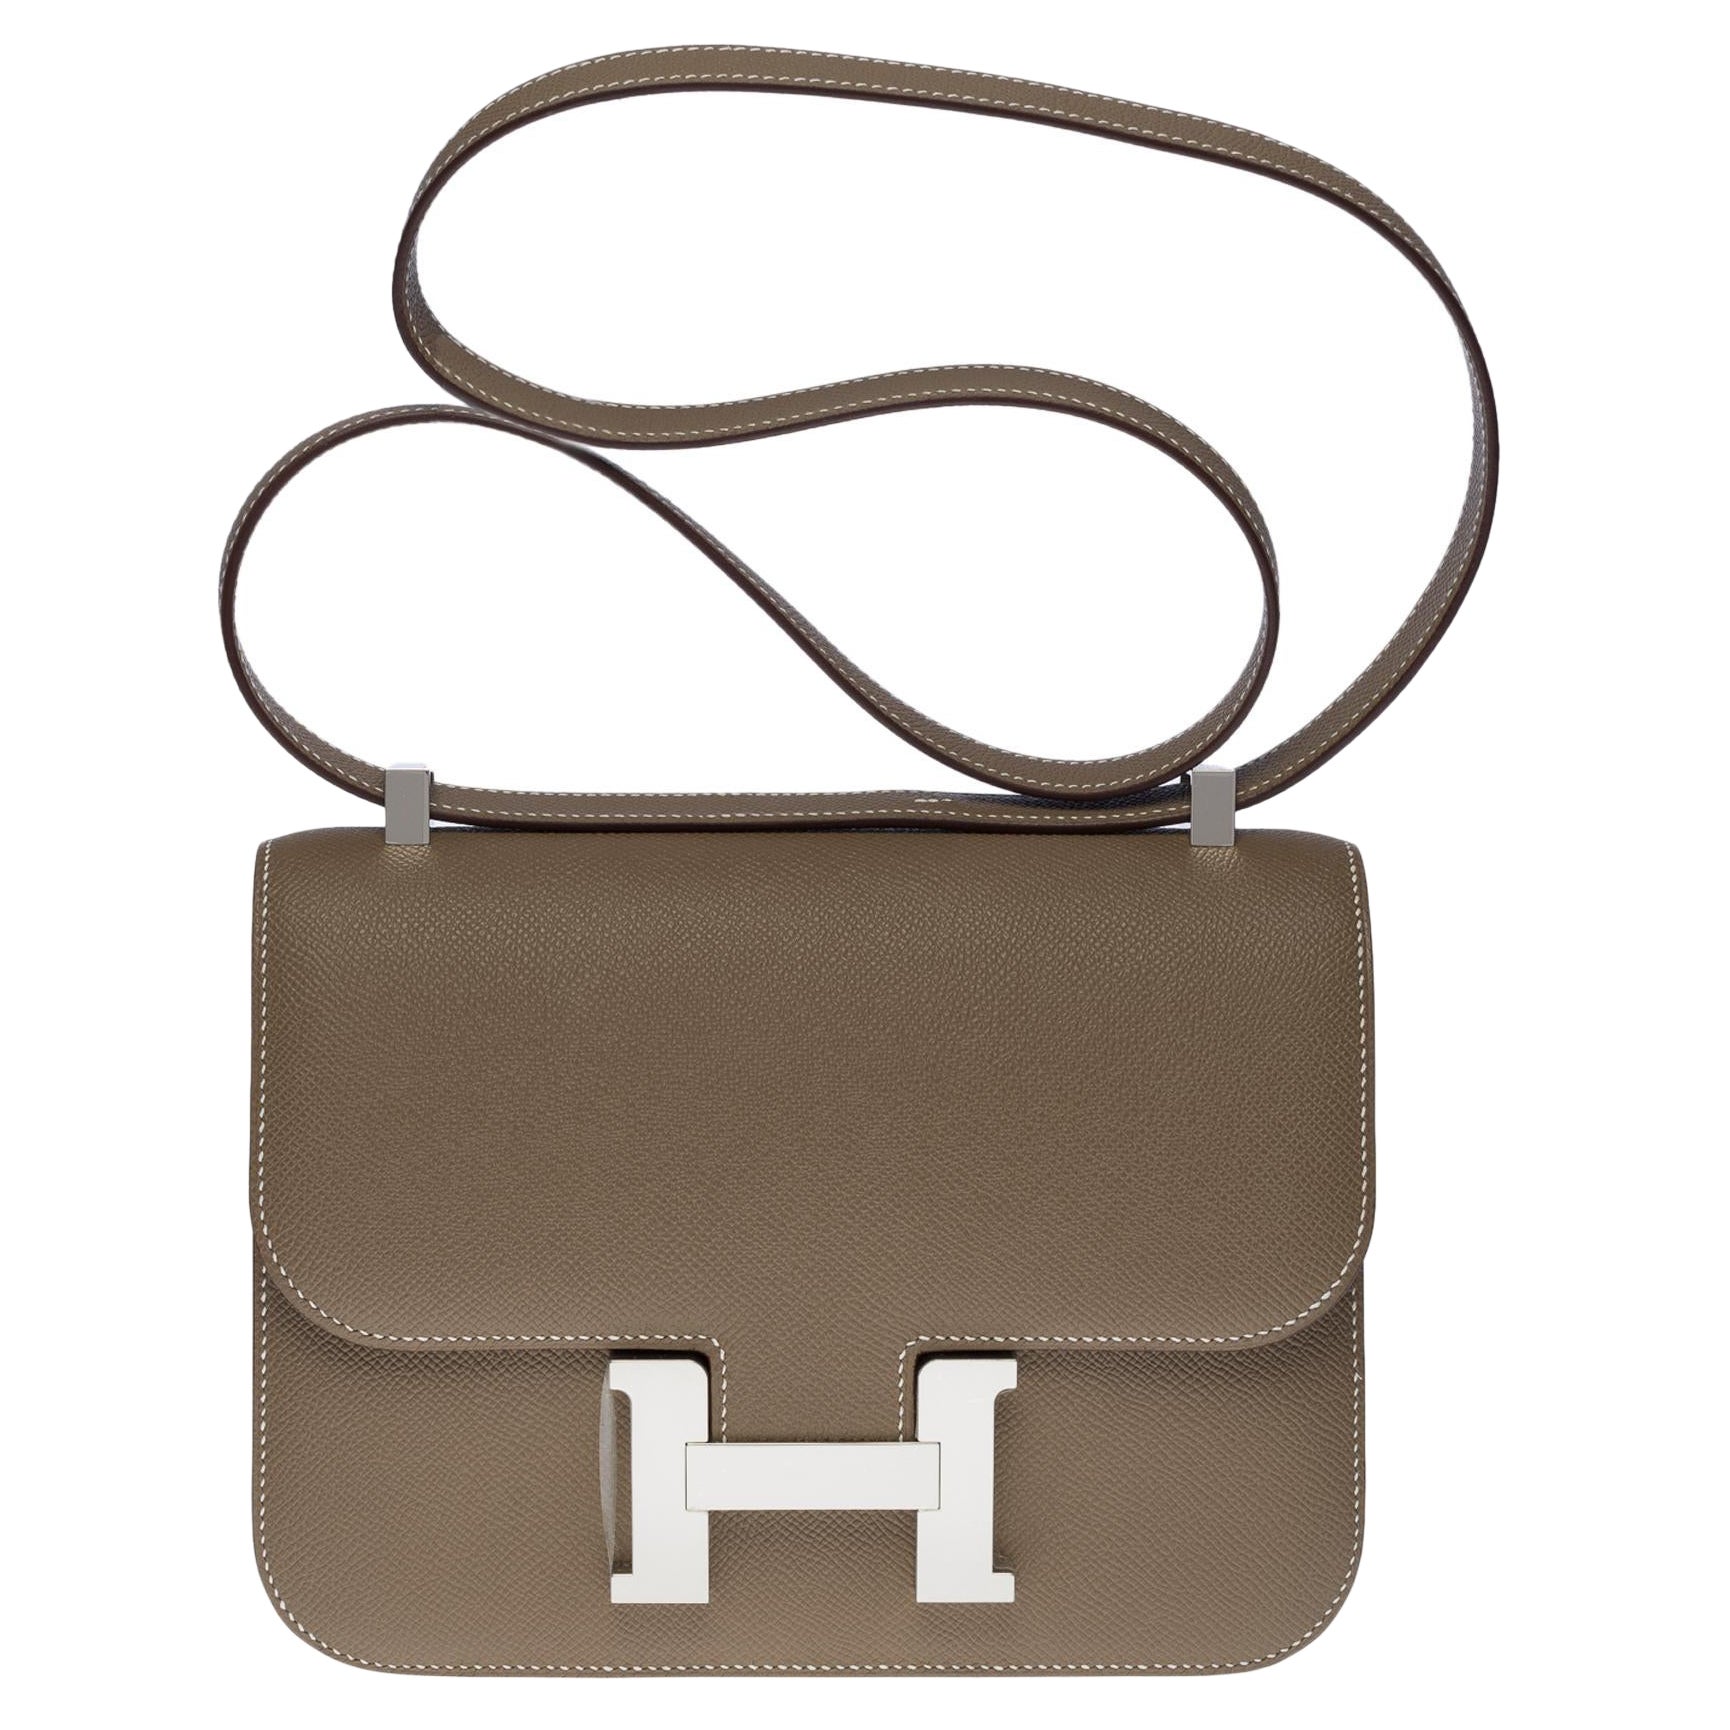 Brand New Hermès Constance 24 shoulder bag in etoupe Epsom leather, SHW